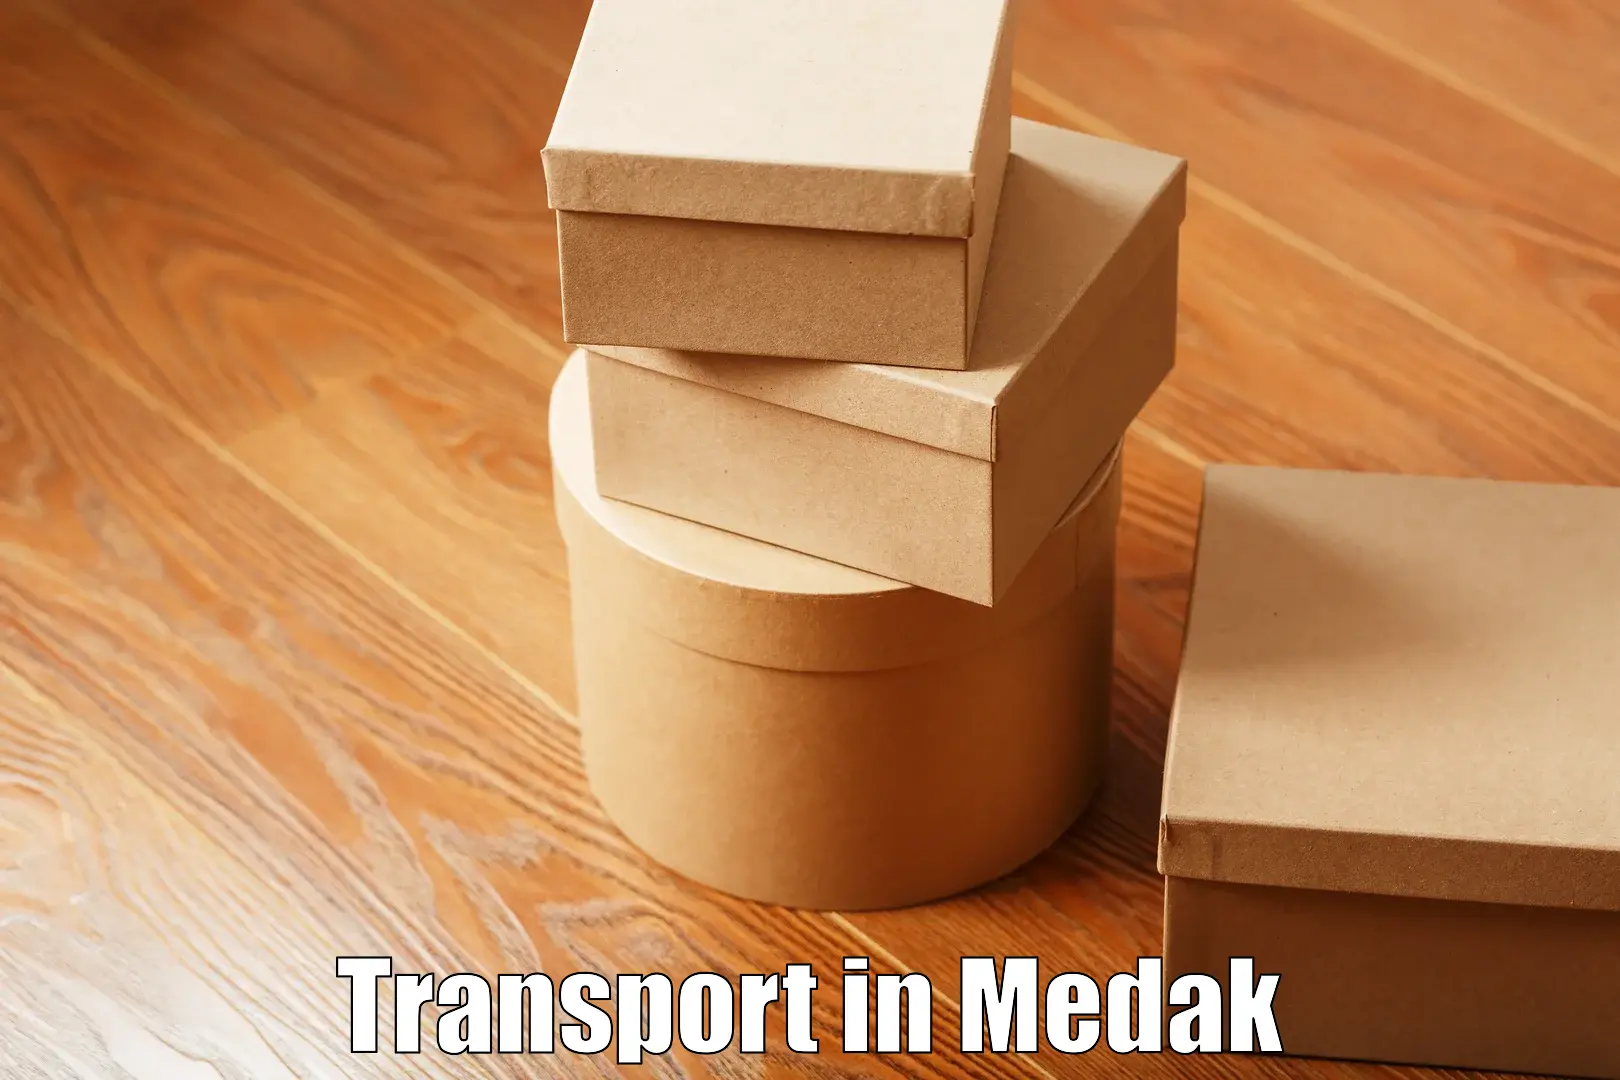 Nationwide transport services in Medak